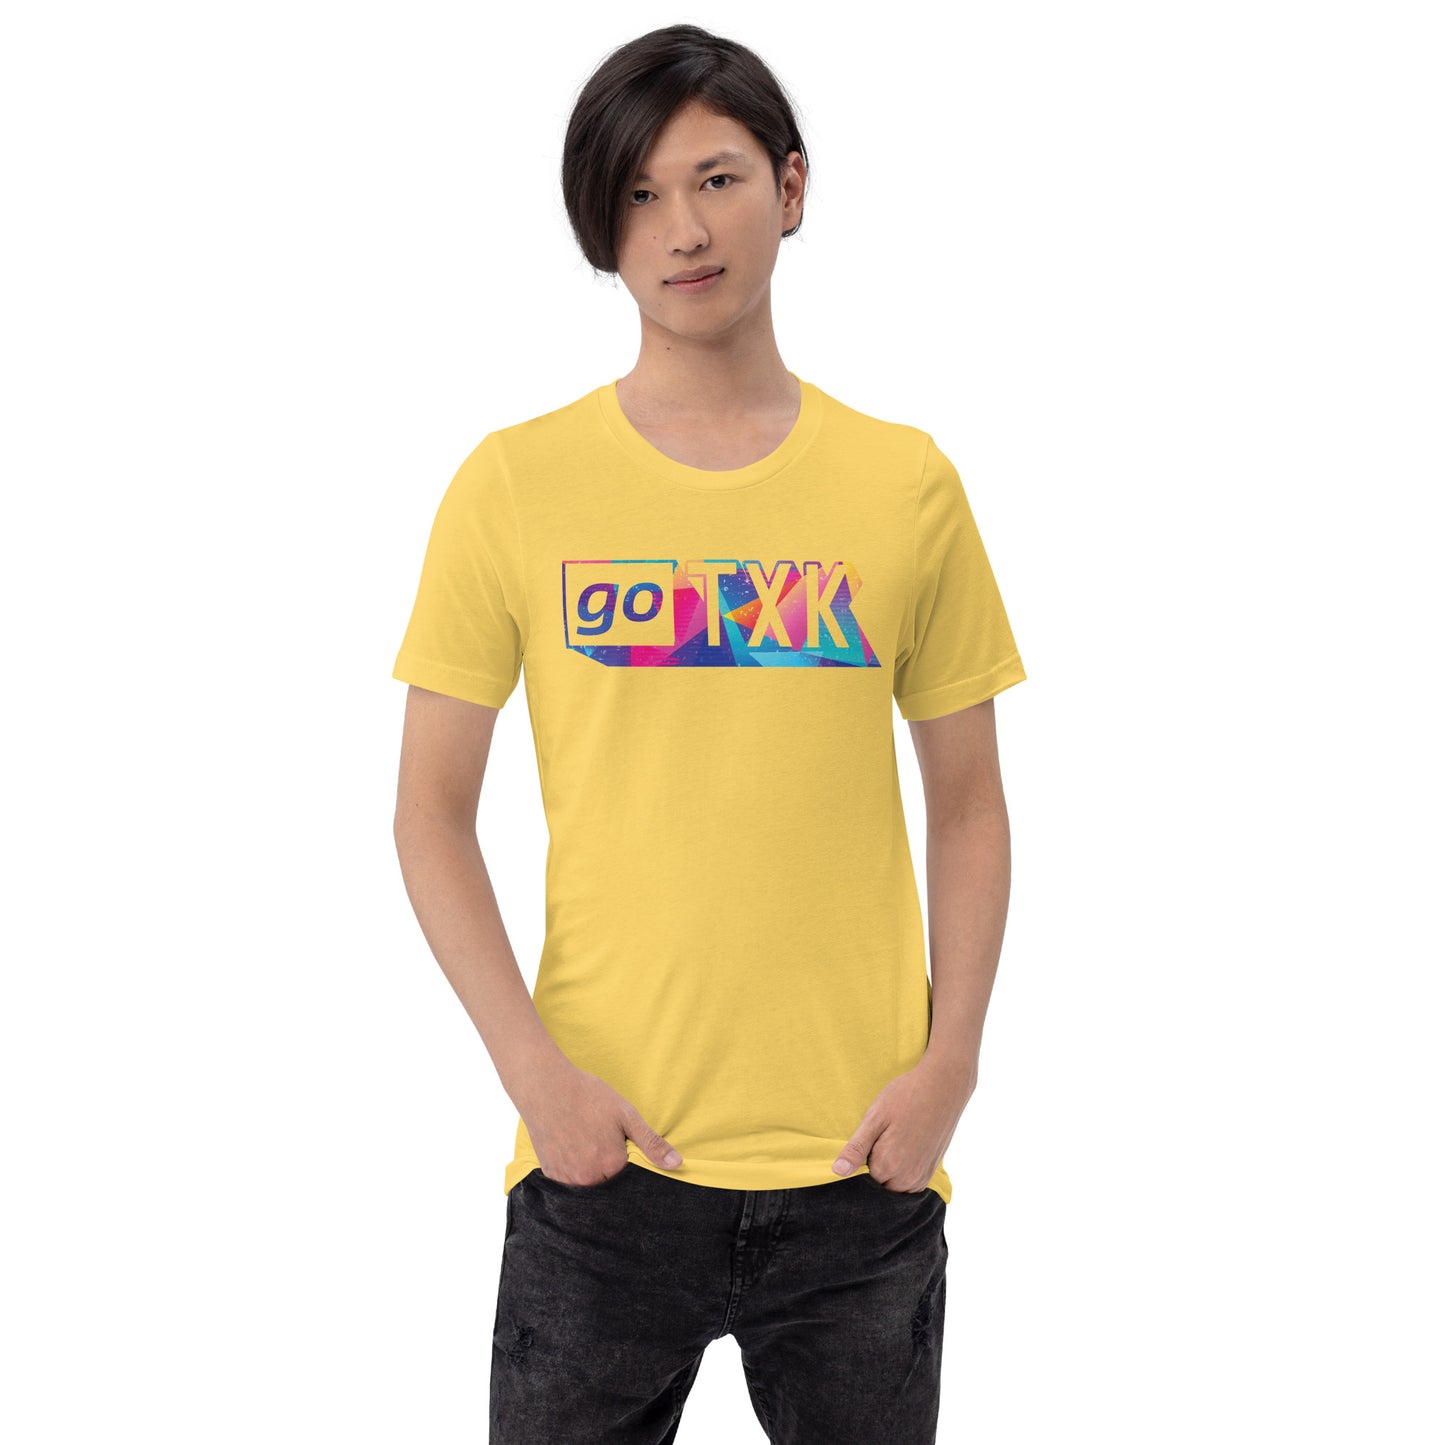 T-shirt - goTXK